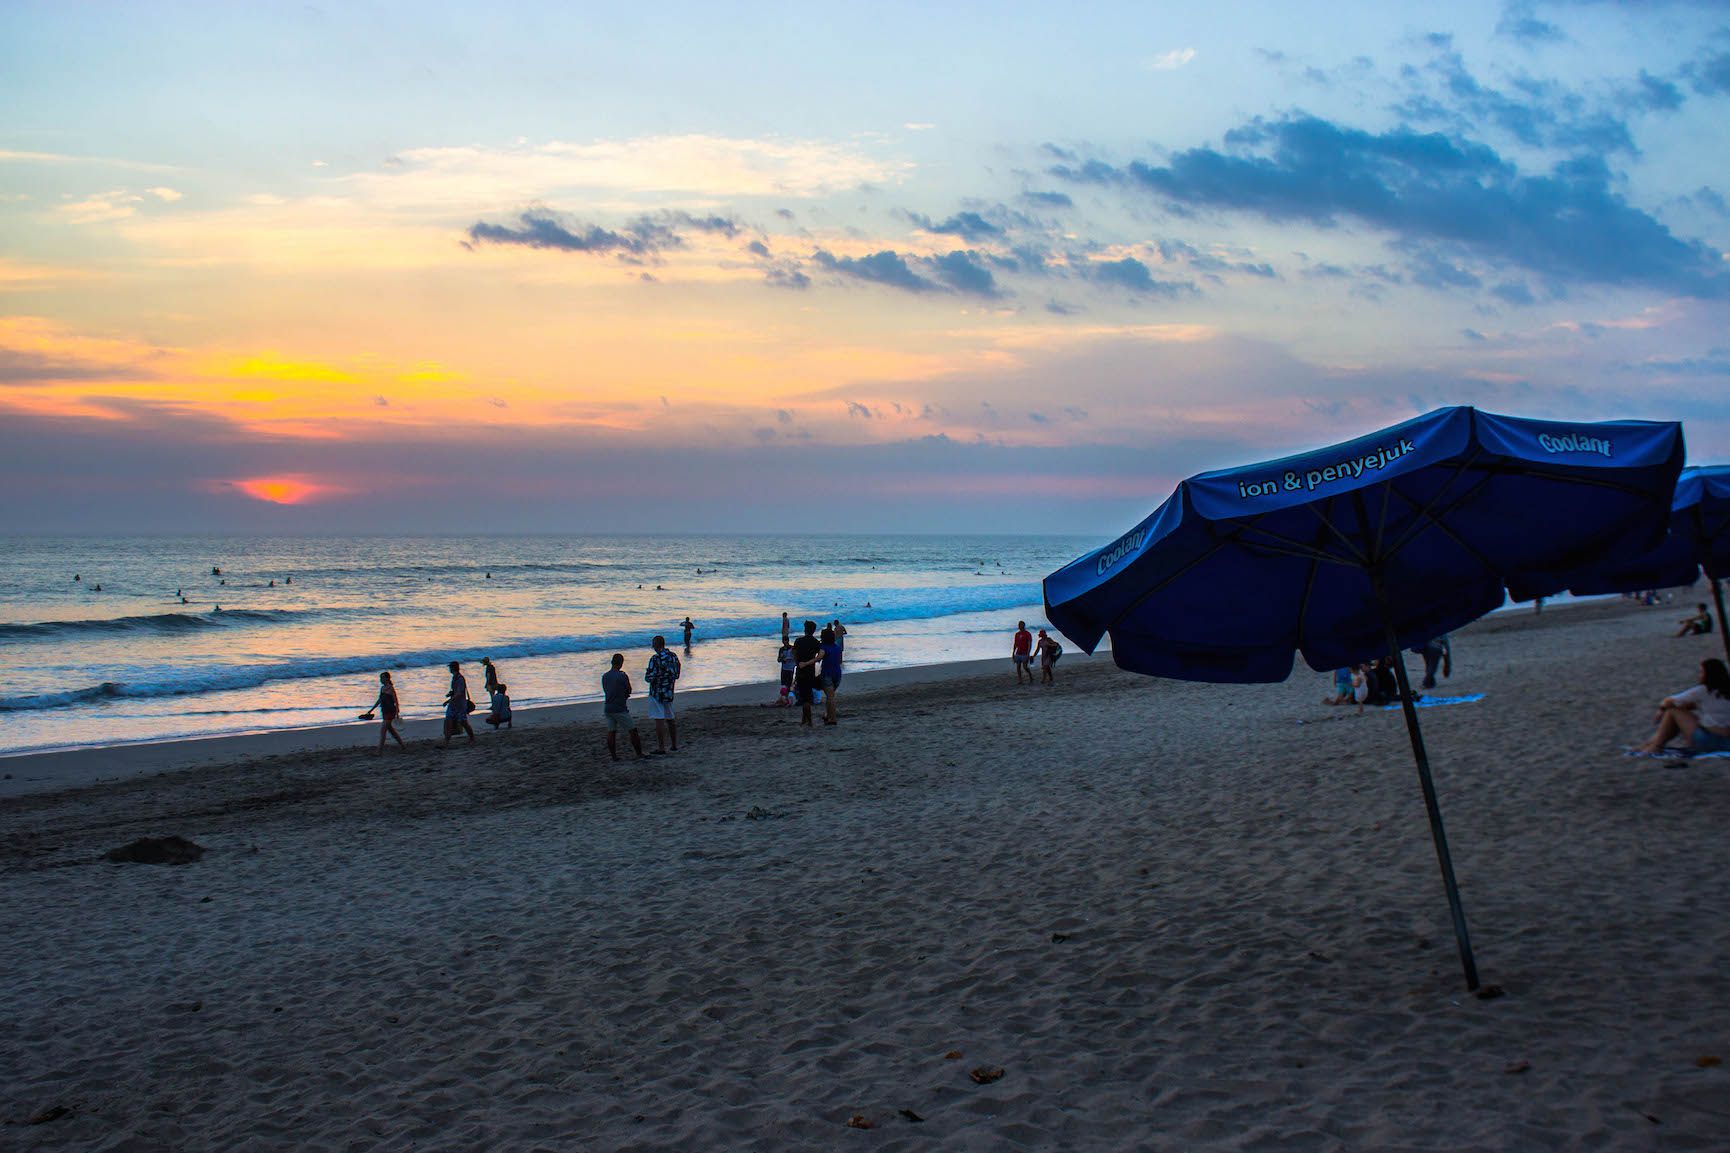 Sunset over Kuta Beach, Bali, Indonesia